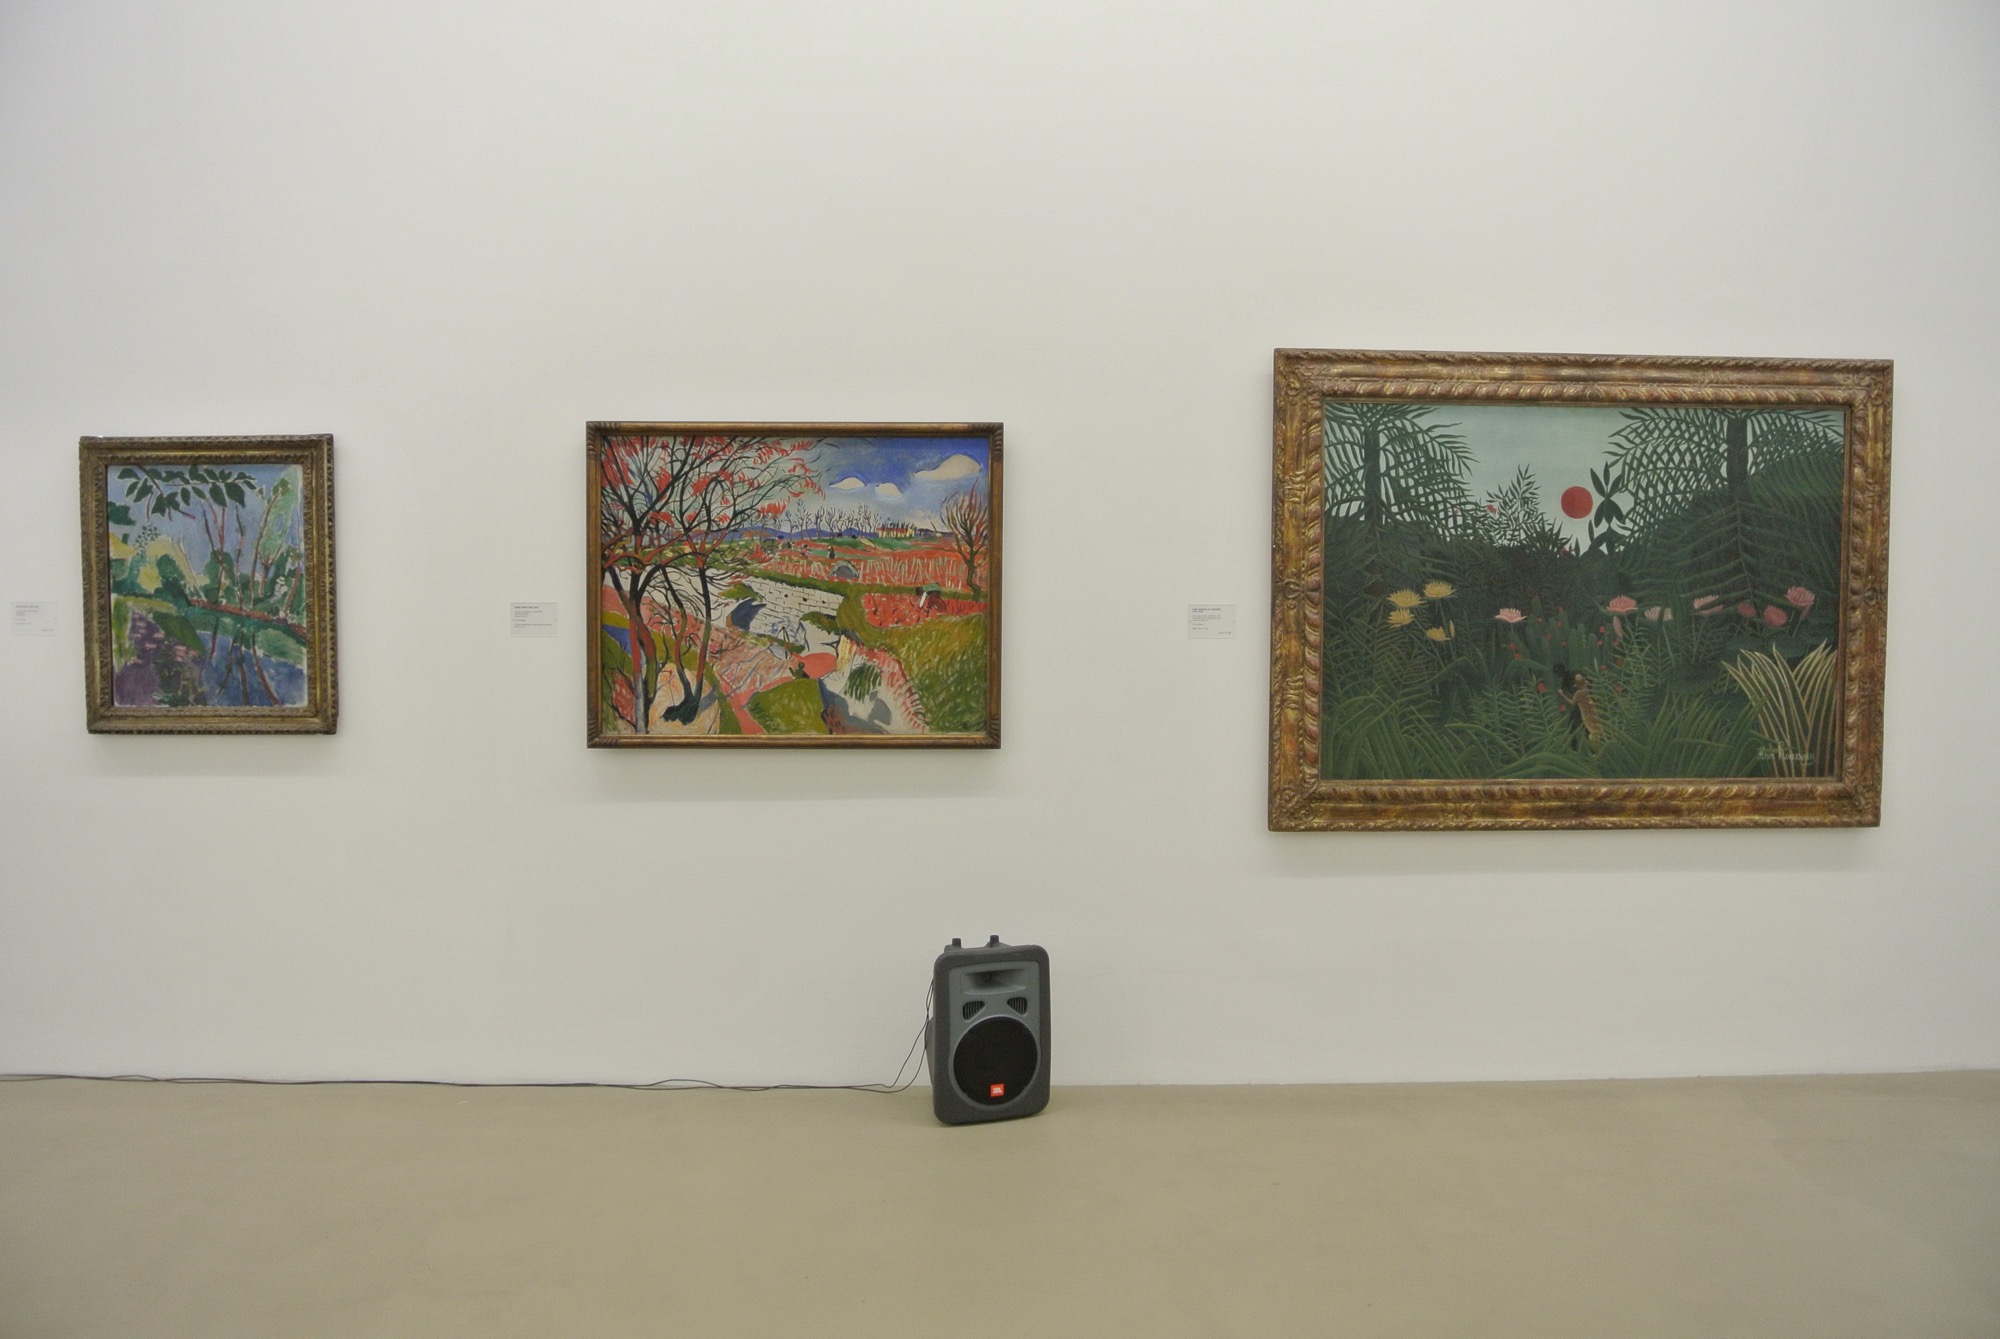 Drei unterschiedliche Naturbilder: André Derains «Les vignes au printemps» zwischen Henri Matisses «La Berge» und Henri Rousseaus «Forêt vierge au soleil couchant», entstanden zwischen 1904 und 1910